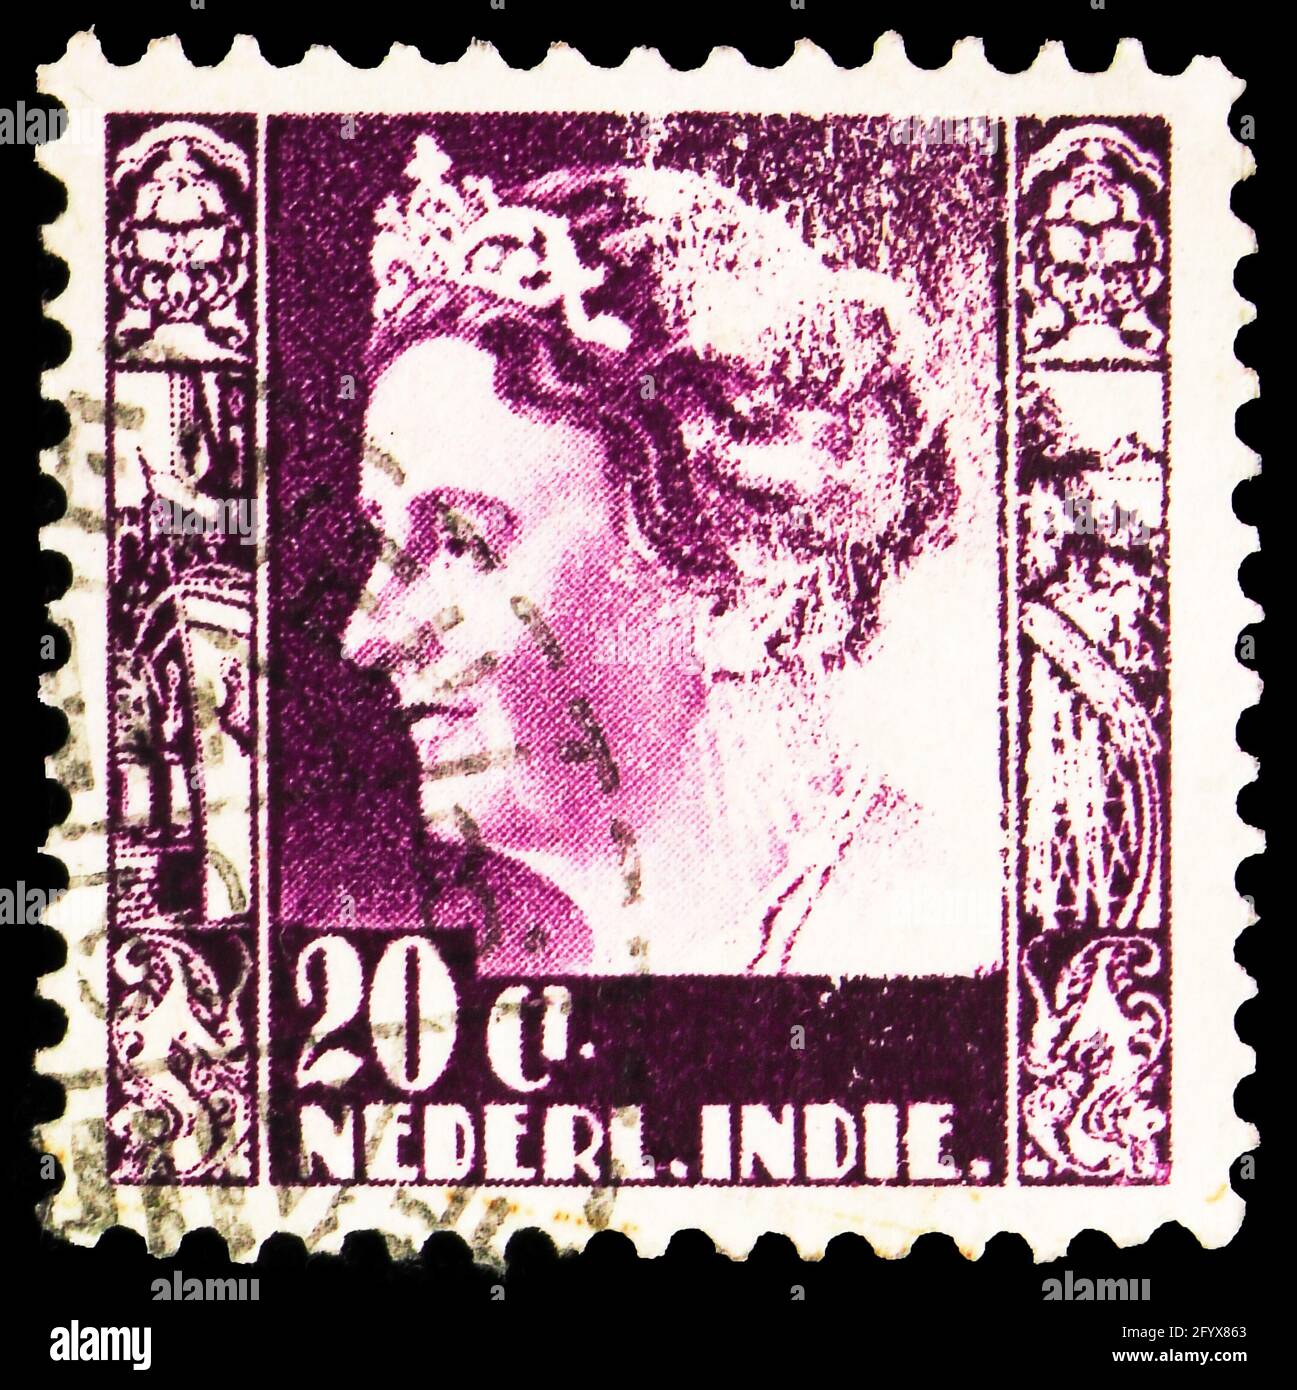 MOSKAU, RUSSLAND - 27. SEPTEMBER 2019: Briefmarke in den Niederlanden Ostindien zeigt Königin Wilhelmina (`Typ kreisler`), 20 Niederländische Indien Stockfoto